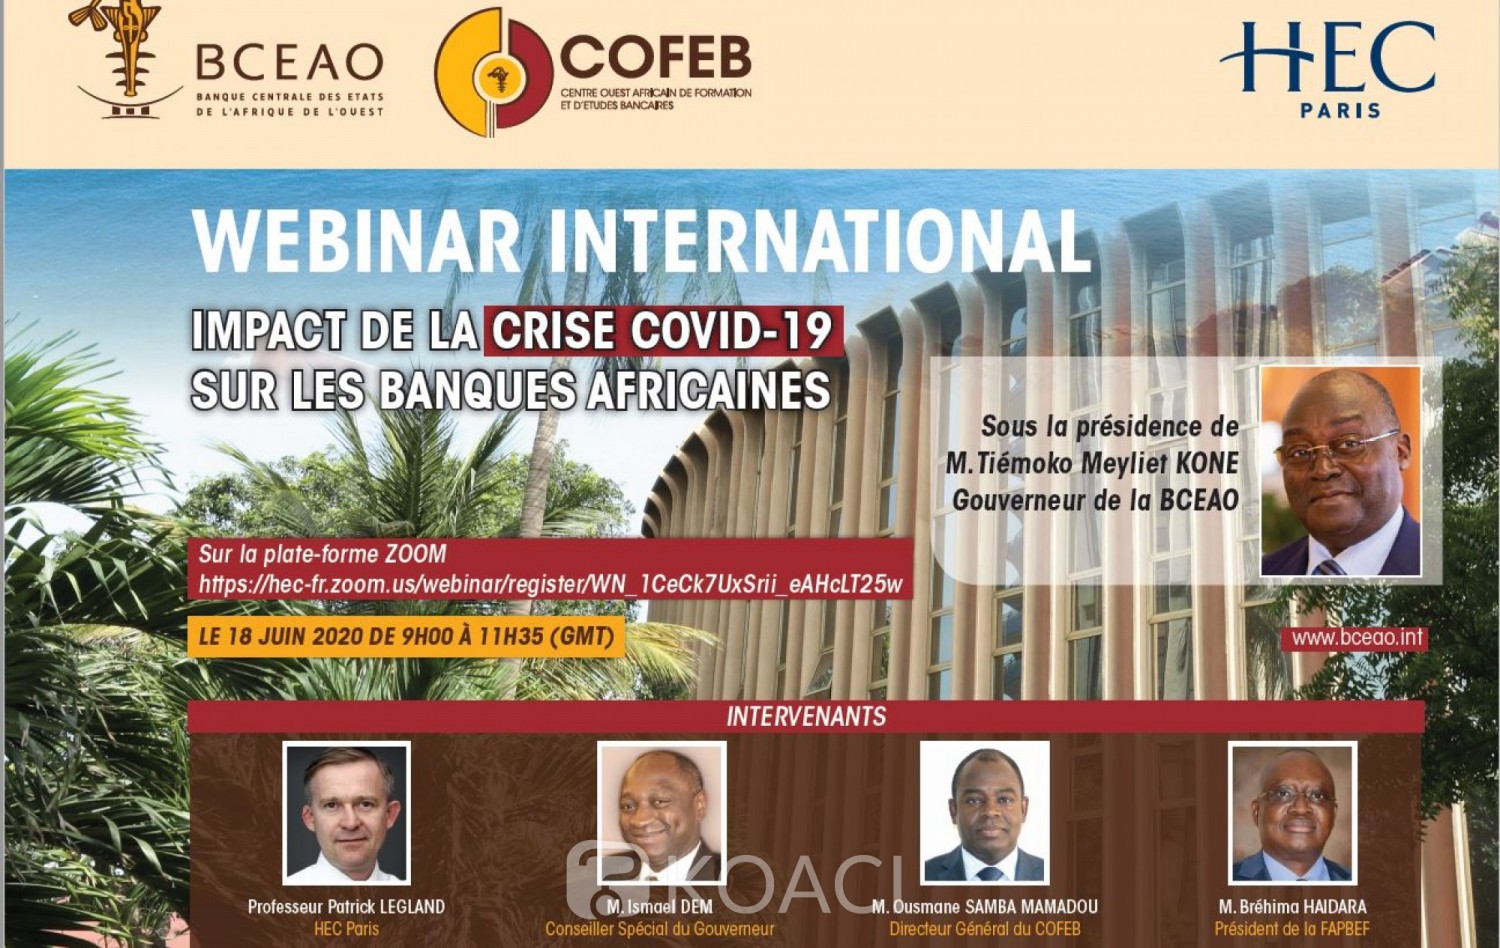 UMOA : Impacts du coronavirus sur les banques africaines, séminaire en ligne de la BCEAO organisé avec le COFEB et HEC